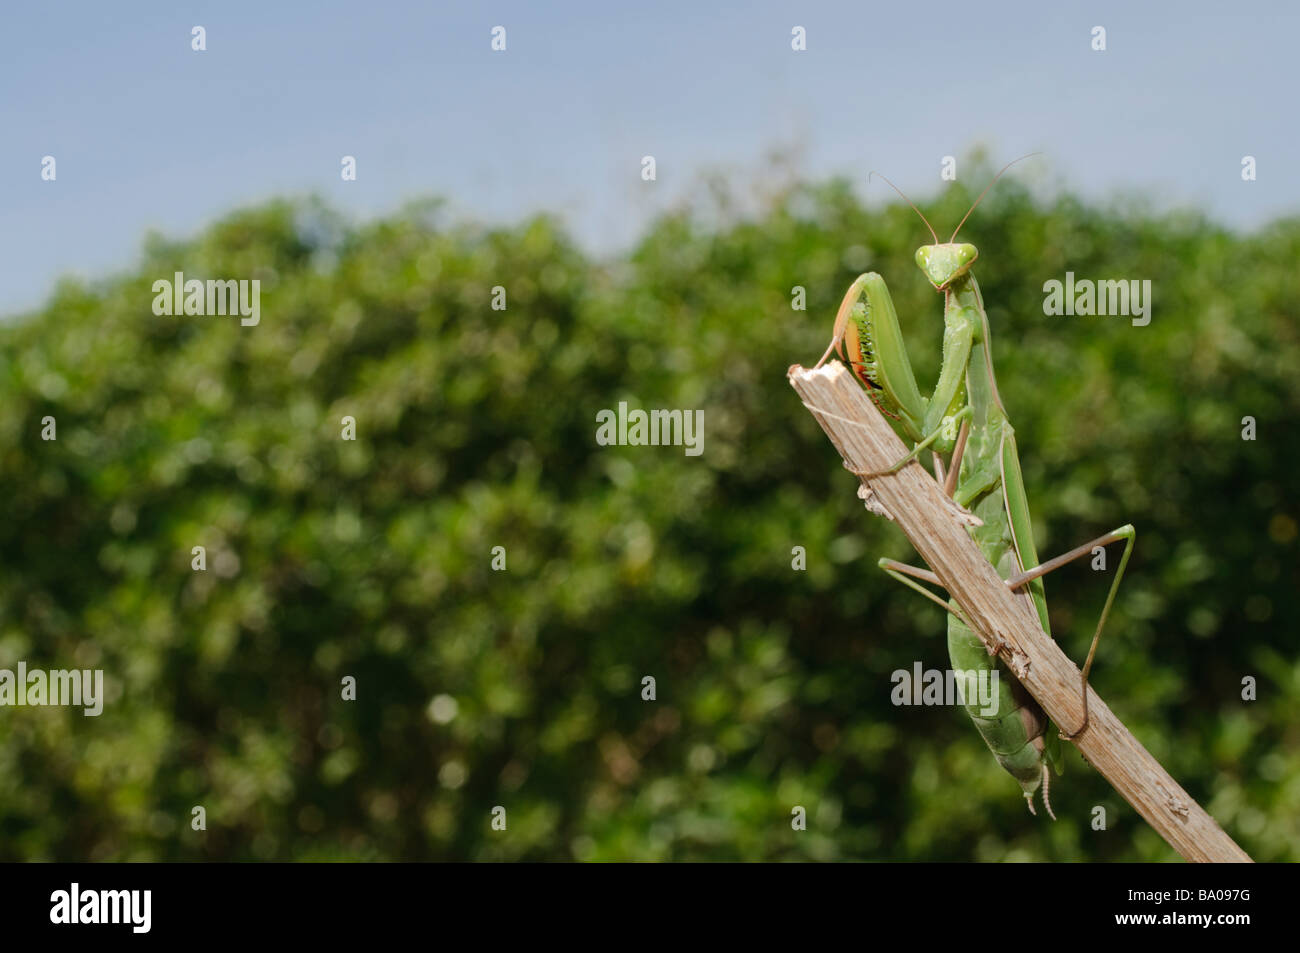 Mediterranean Praying Mantis Mantis religiosa Spain Stock Photo